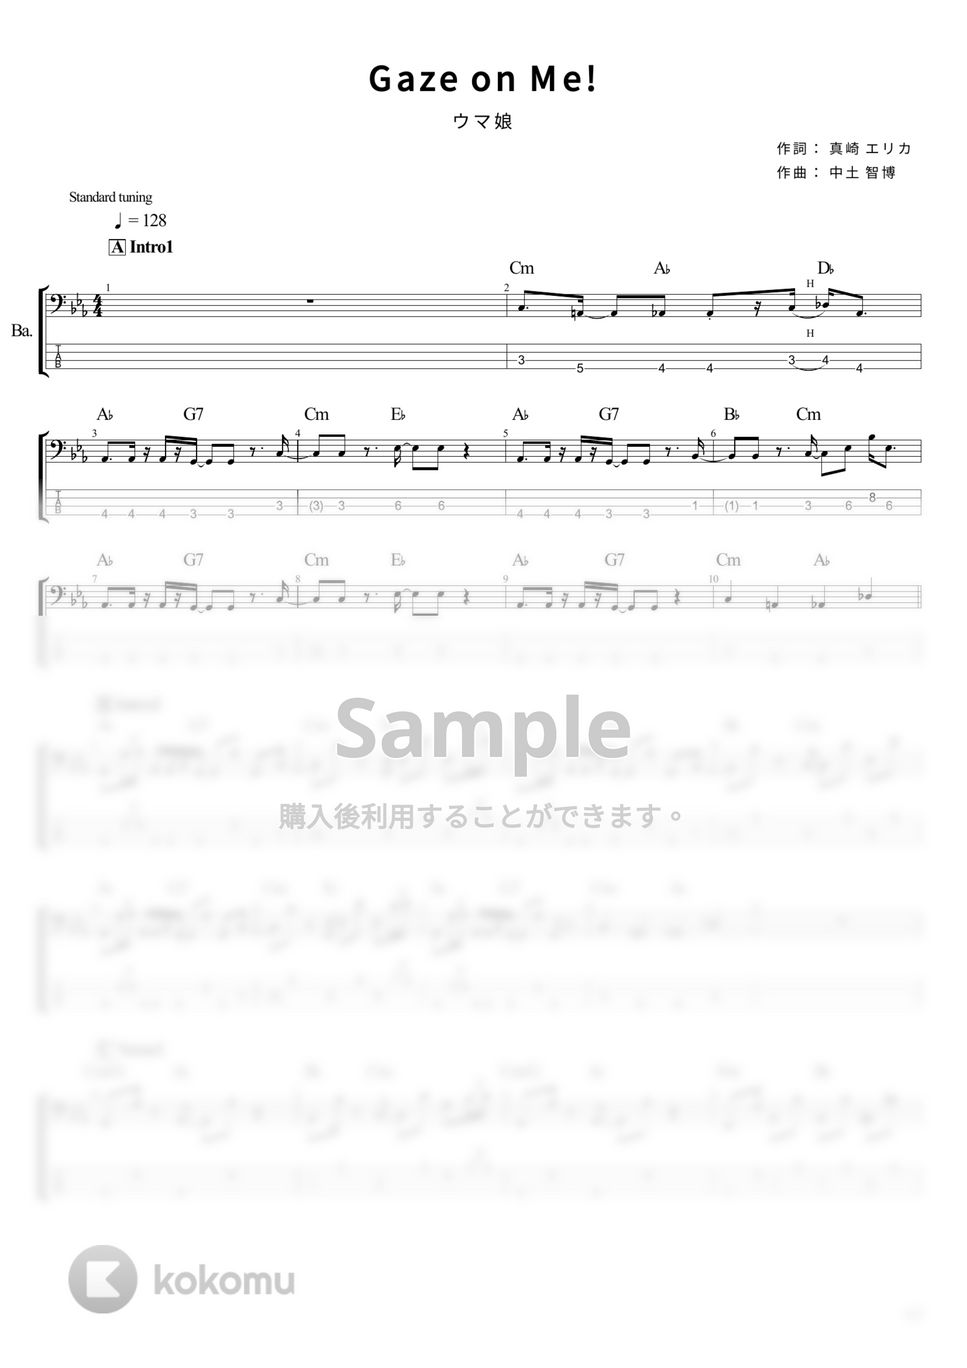 ウマ娘 - Gaze on Me! (Game size) (ベース Tab譜 4弦) by T's bass score